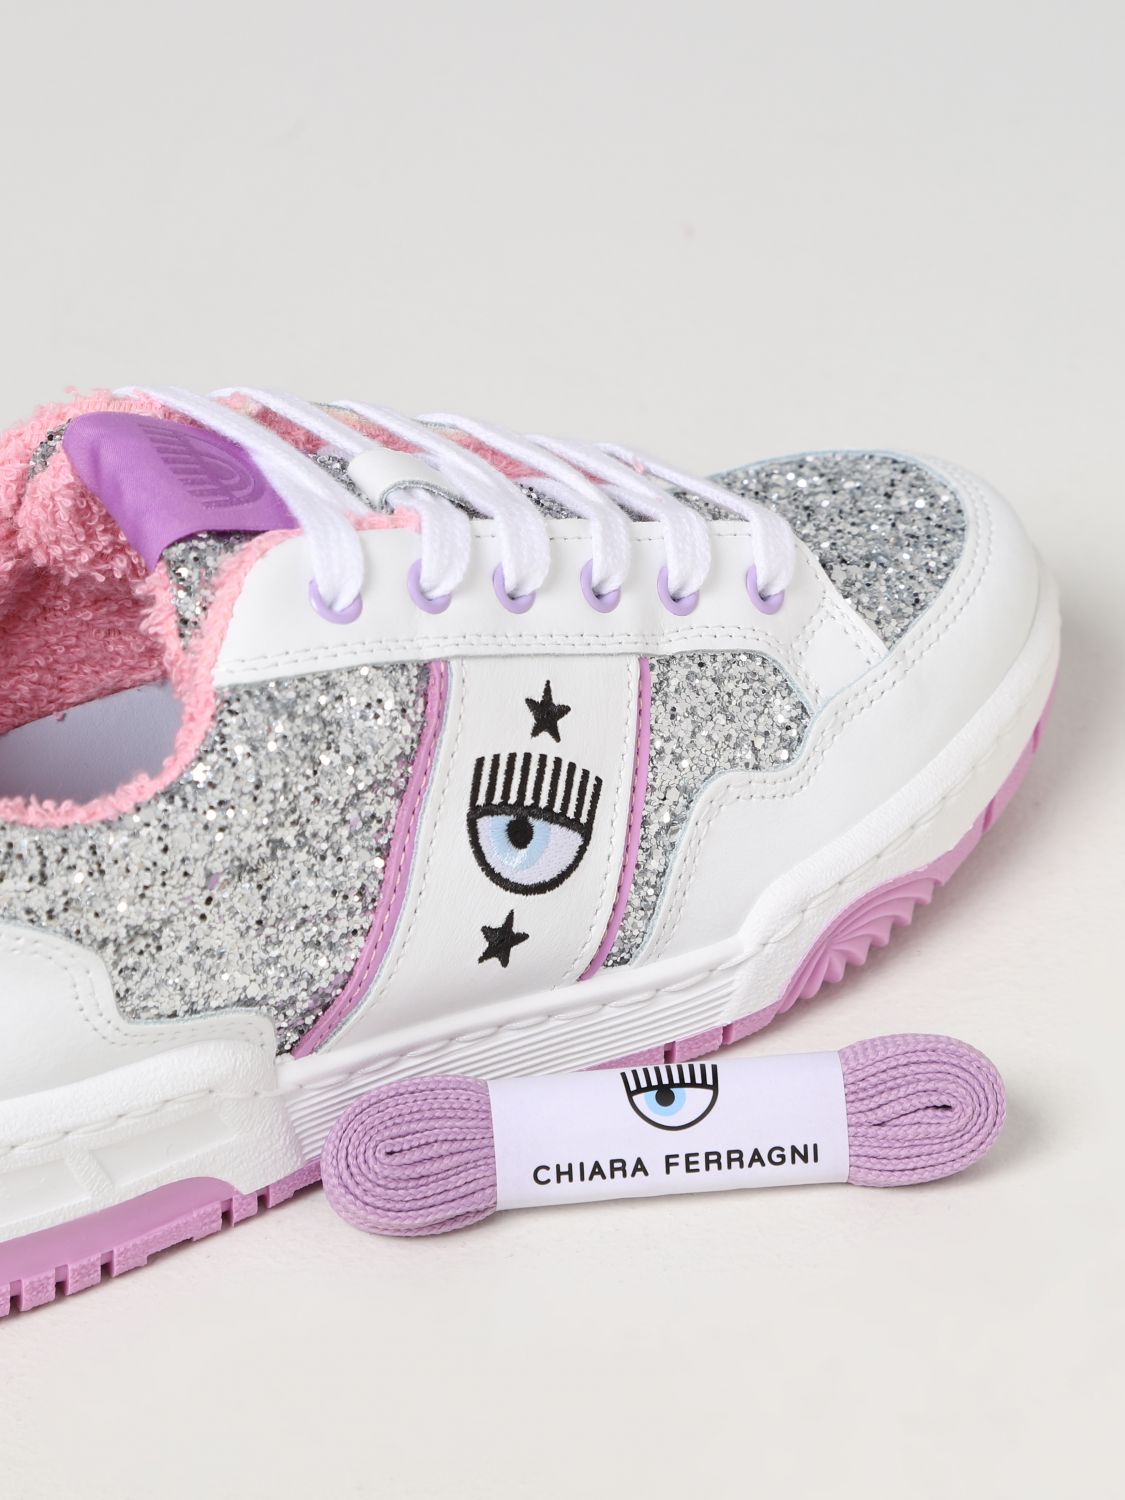 Chiara Ferragni chunky sneaker in ice white